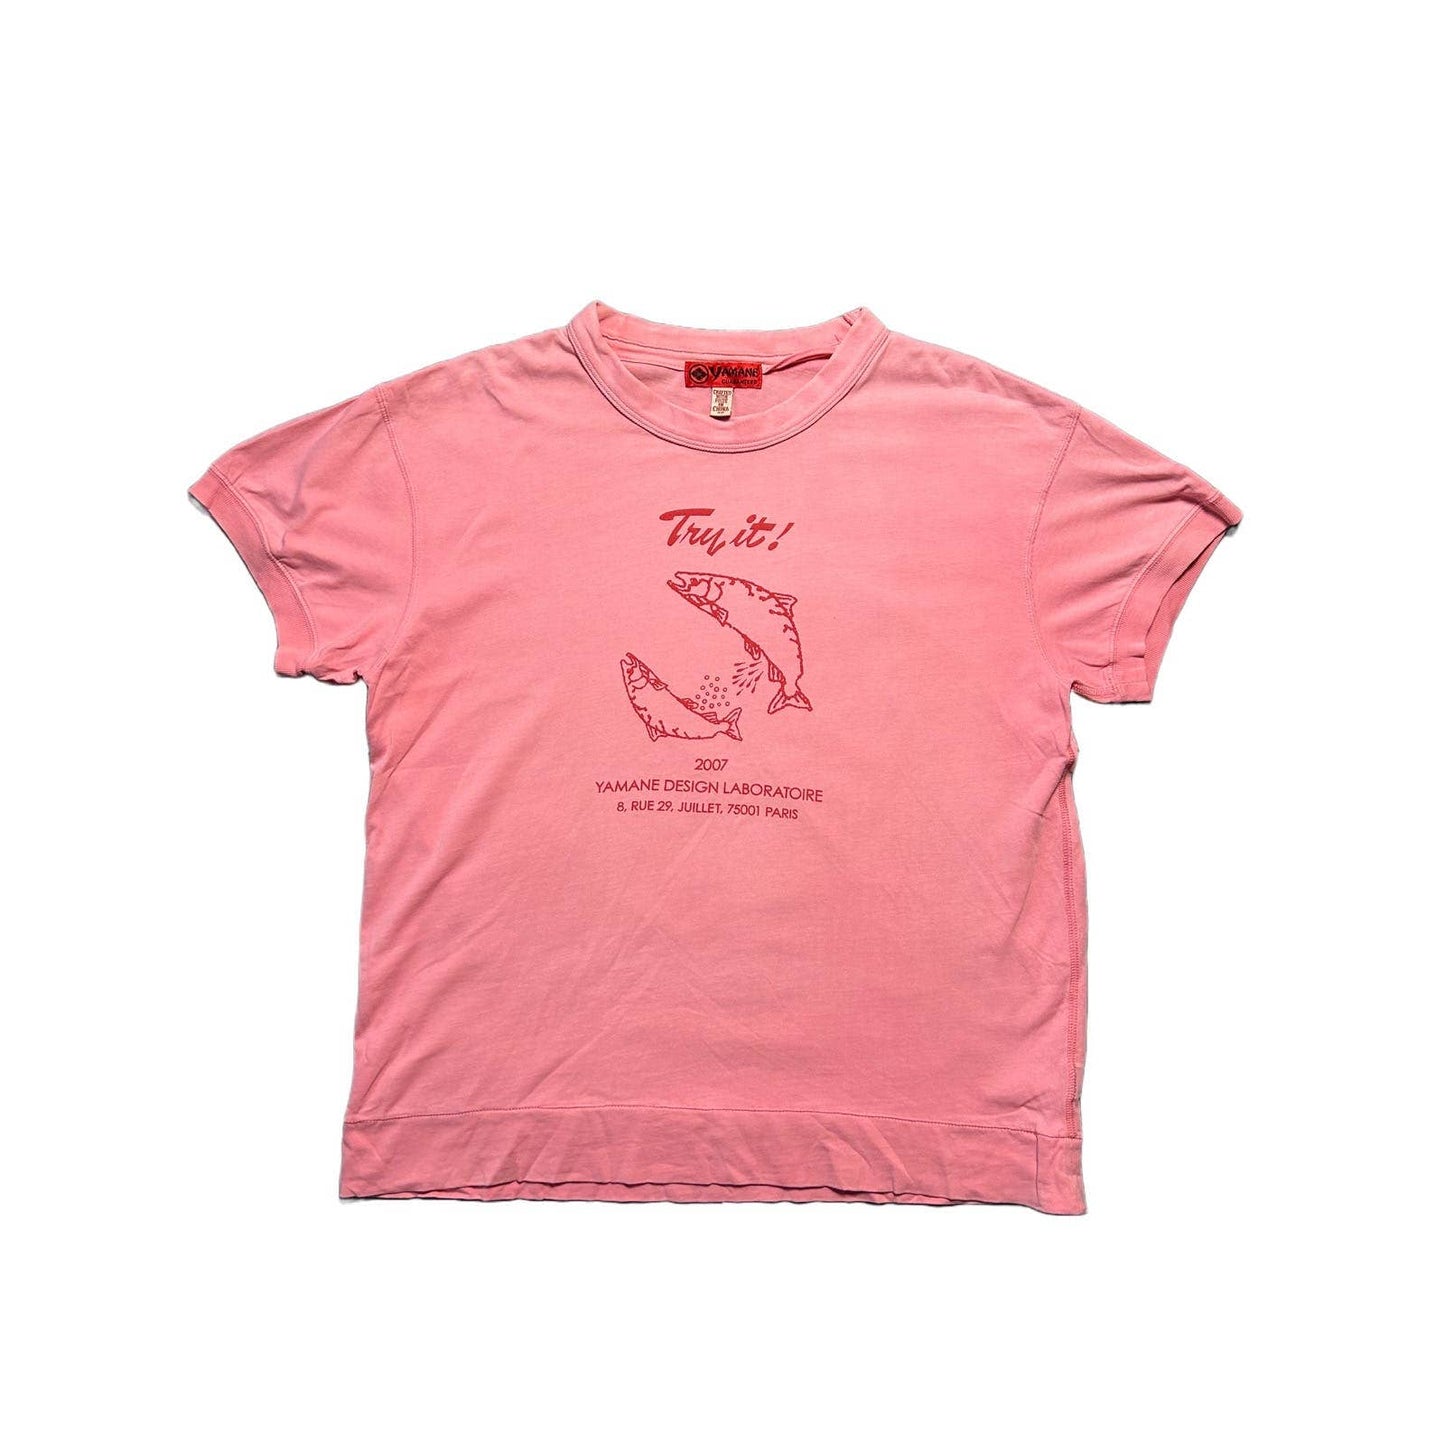 Evisu T-shirt pink big logo Try It Fish 2007 Yamane Paris